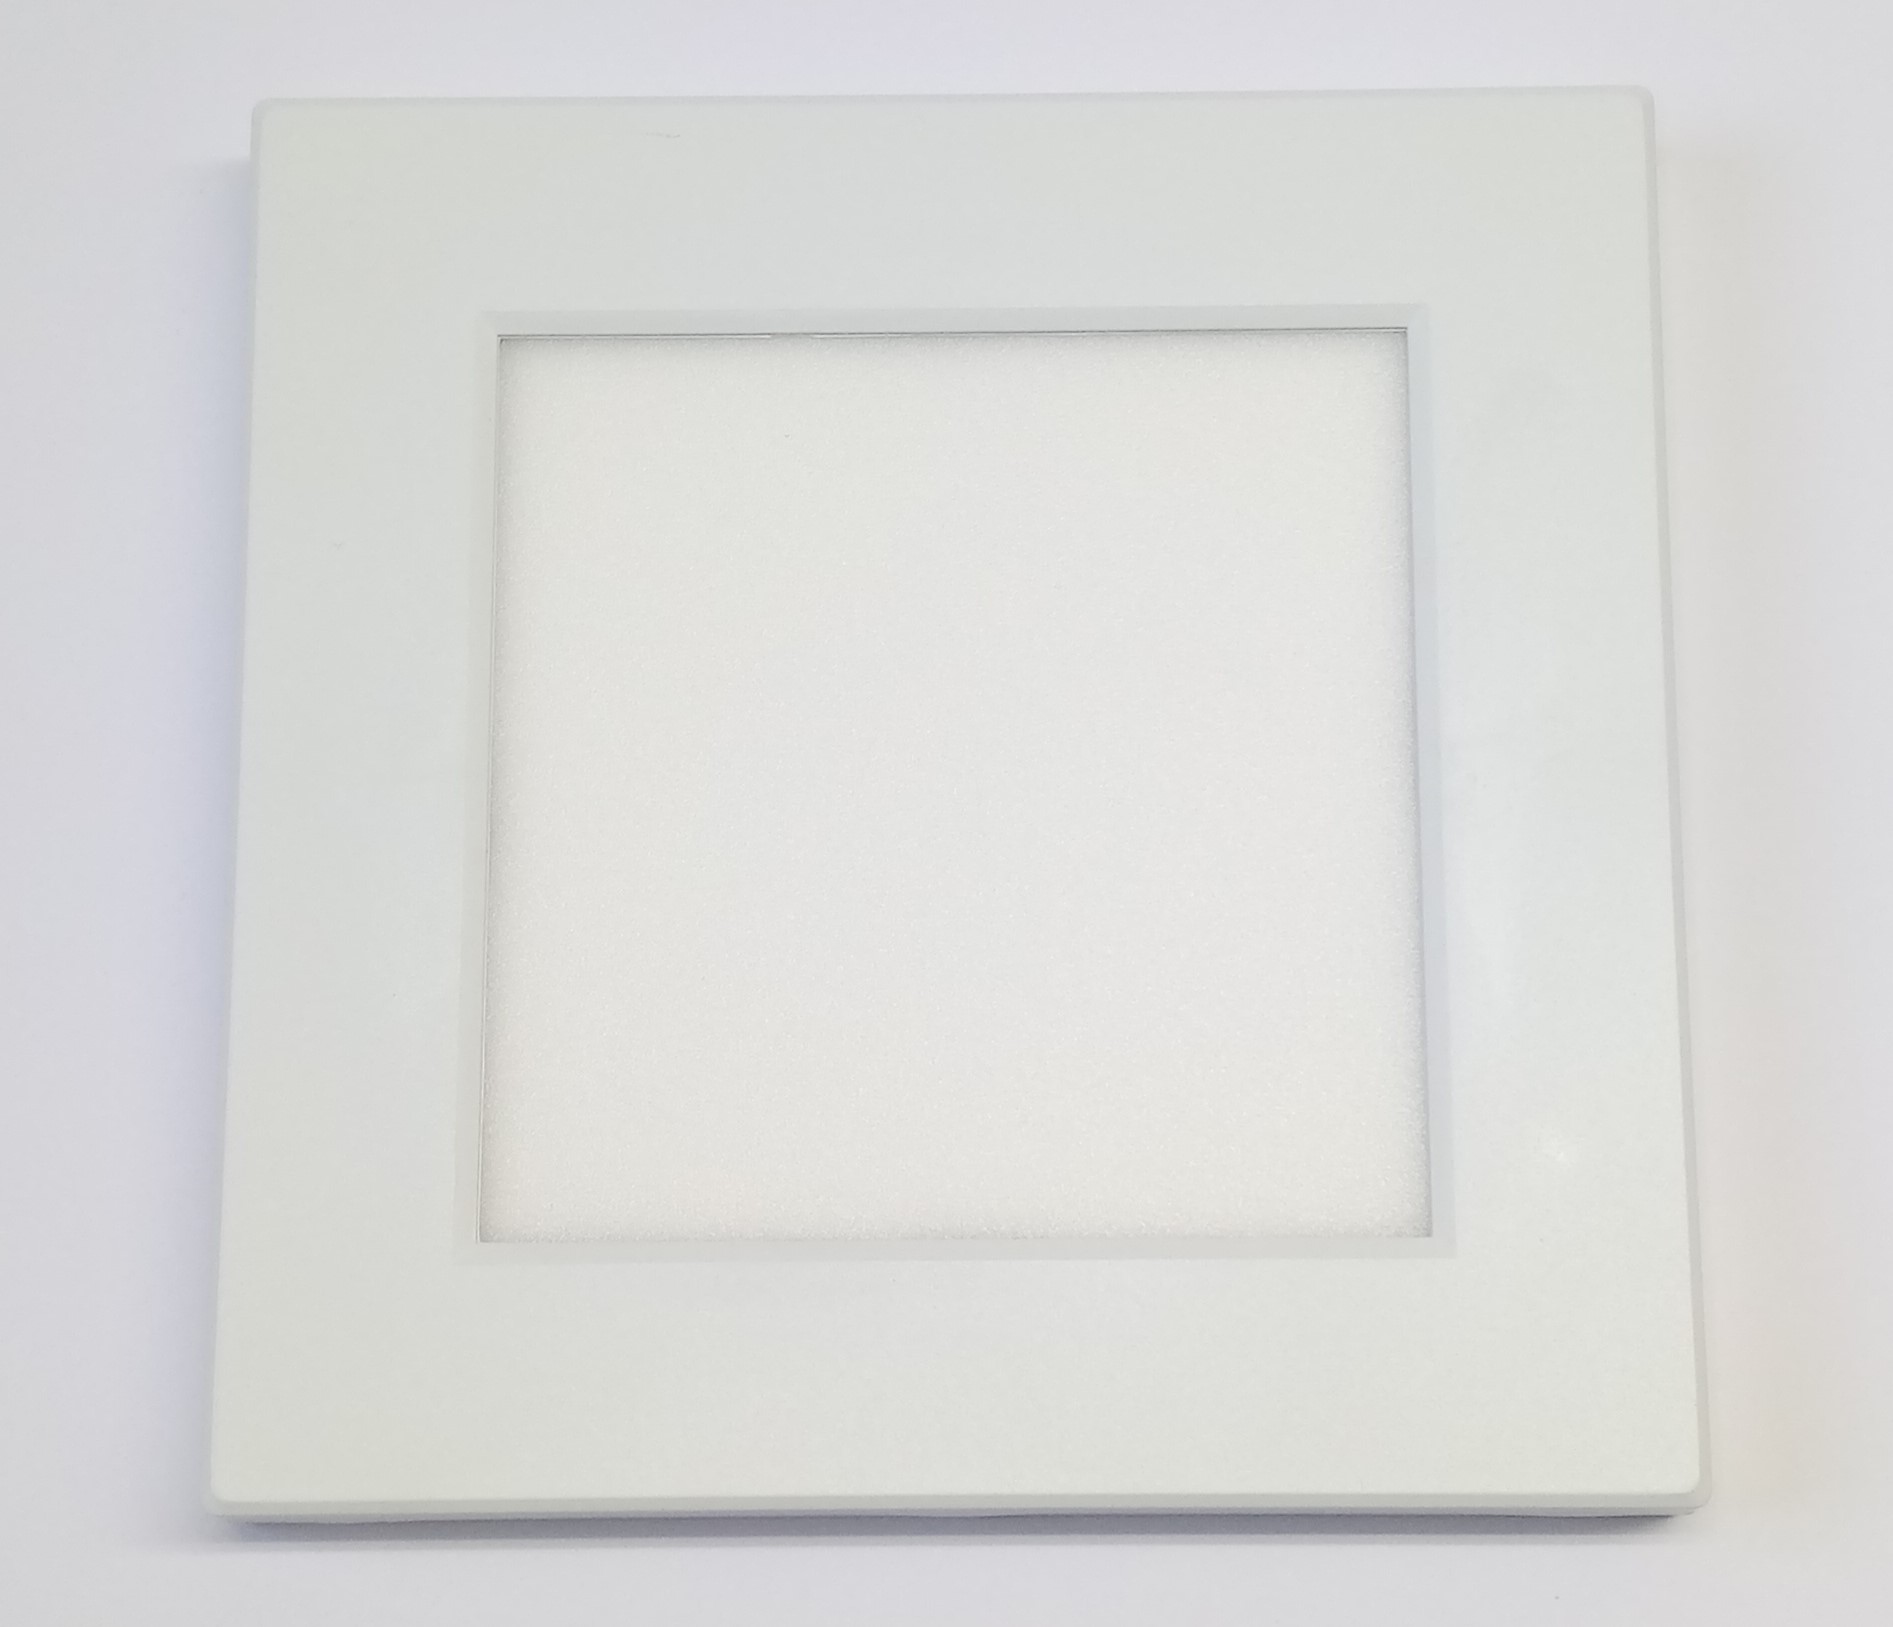 Svítidlo LED přisazené, 18W, 1620lm, 3000-6000K, čtvercové, bílé